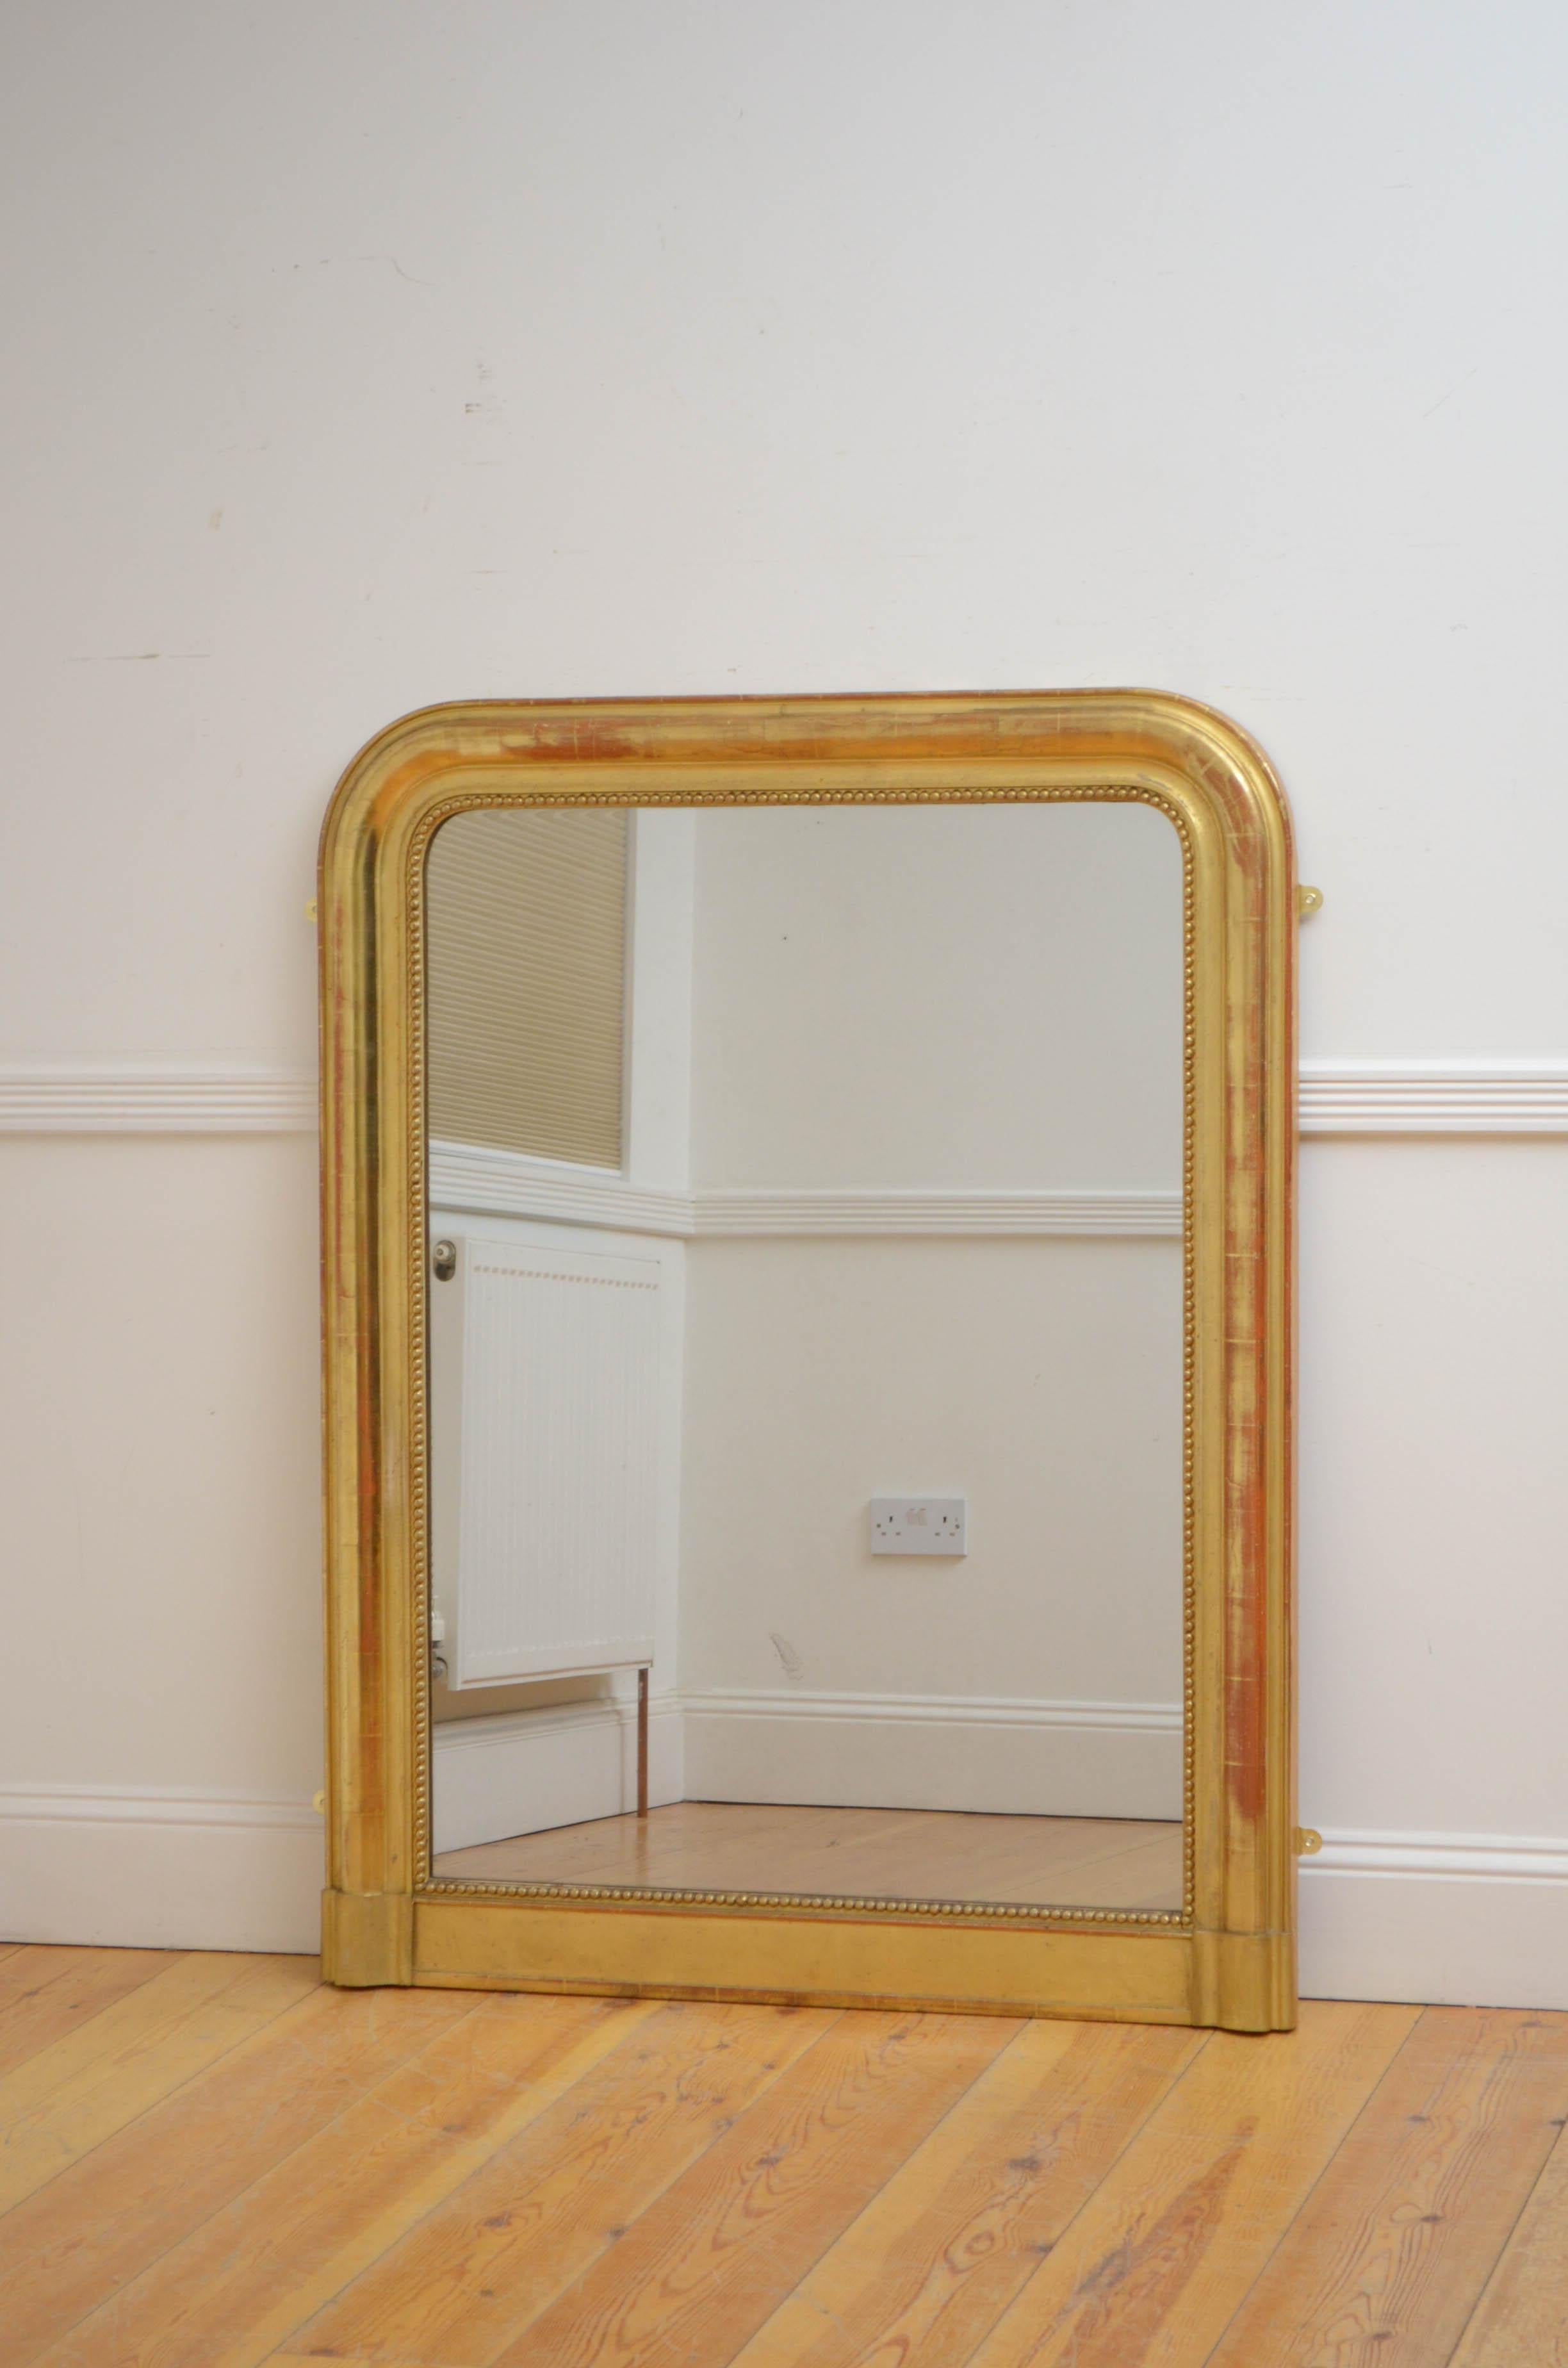 Sn5209 Miroir mural doré du 19ème siècle, avec vitre d'origine renardée, dans un cadre doré à perles et à coussin moulé. Ce miroir ancien a conservé son verre d'origine, sa dorure d'origine et ses panneaux arrière d'origine, le tout en état de